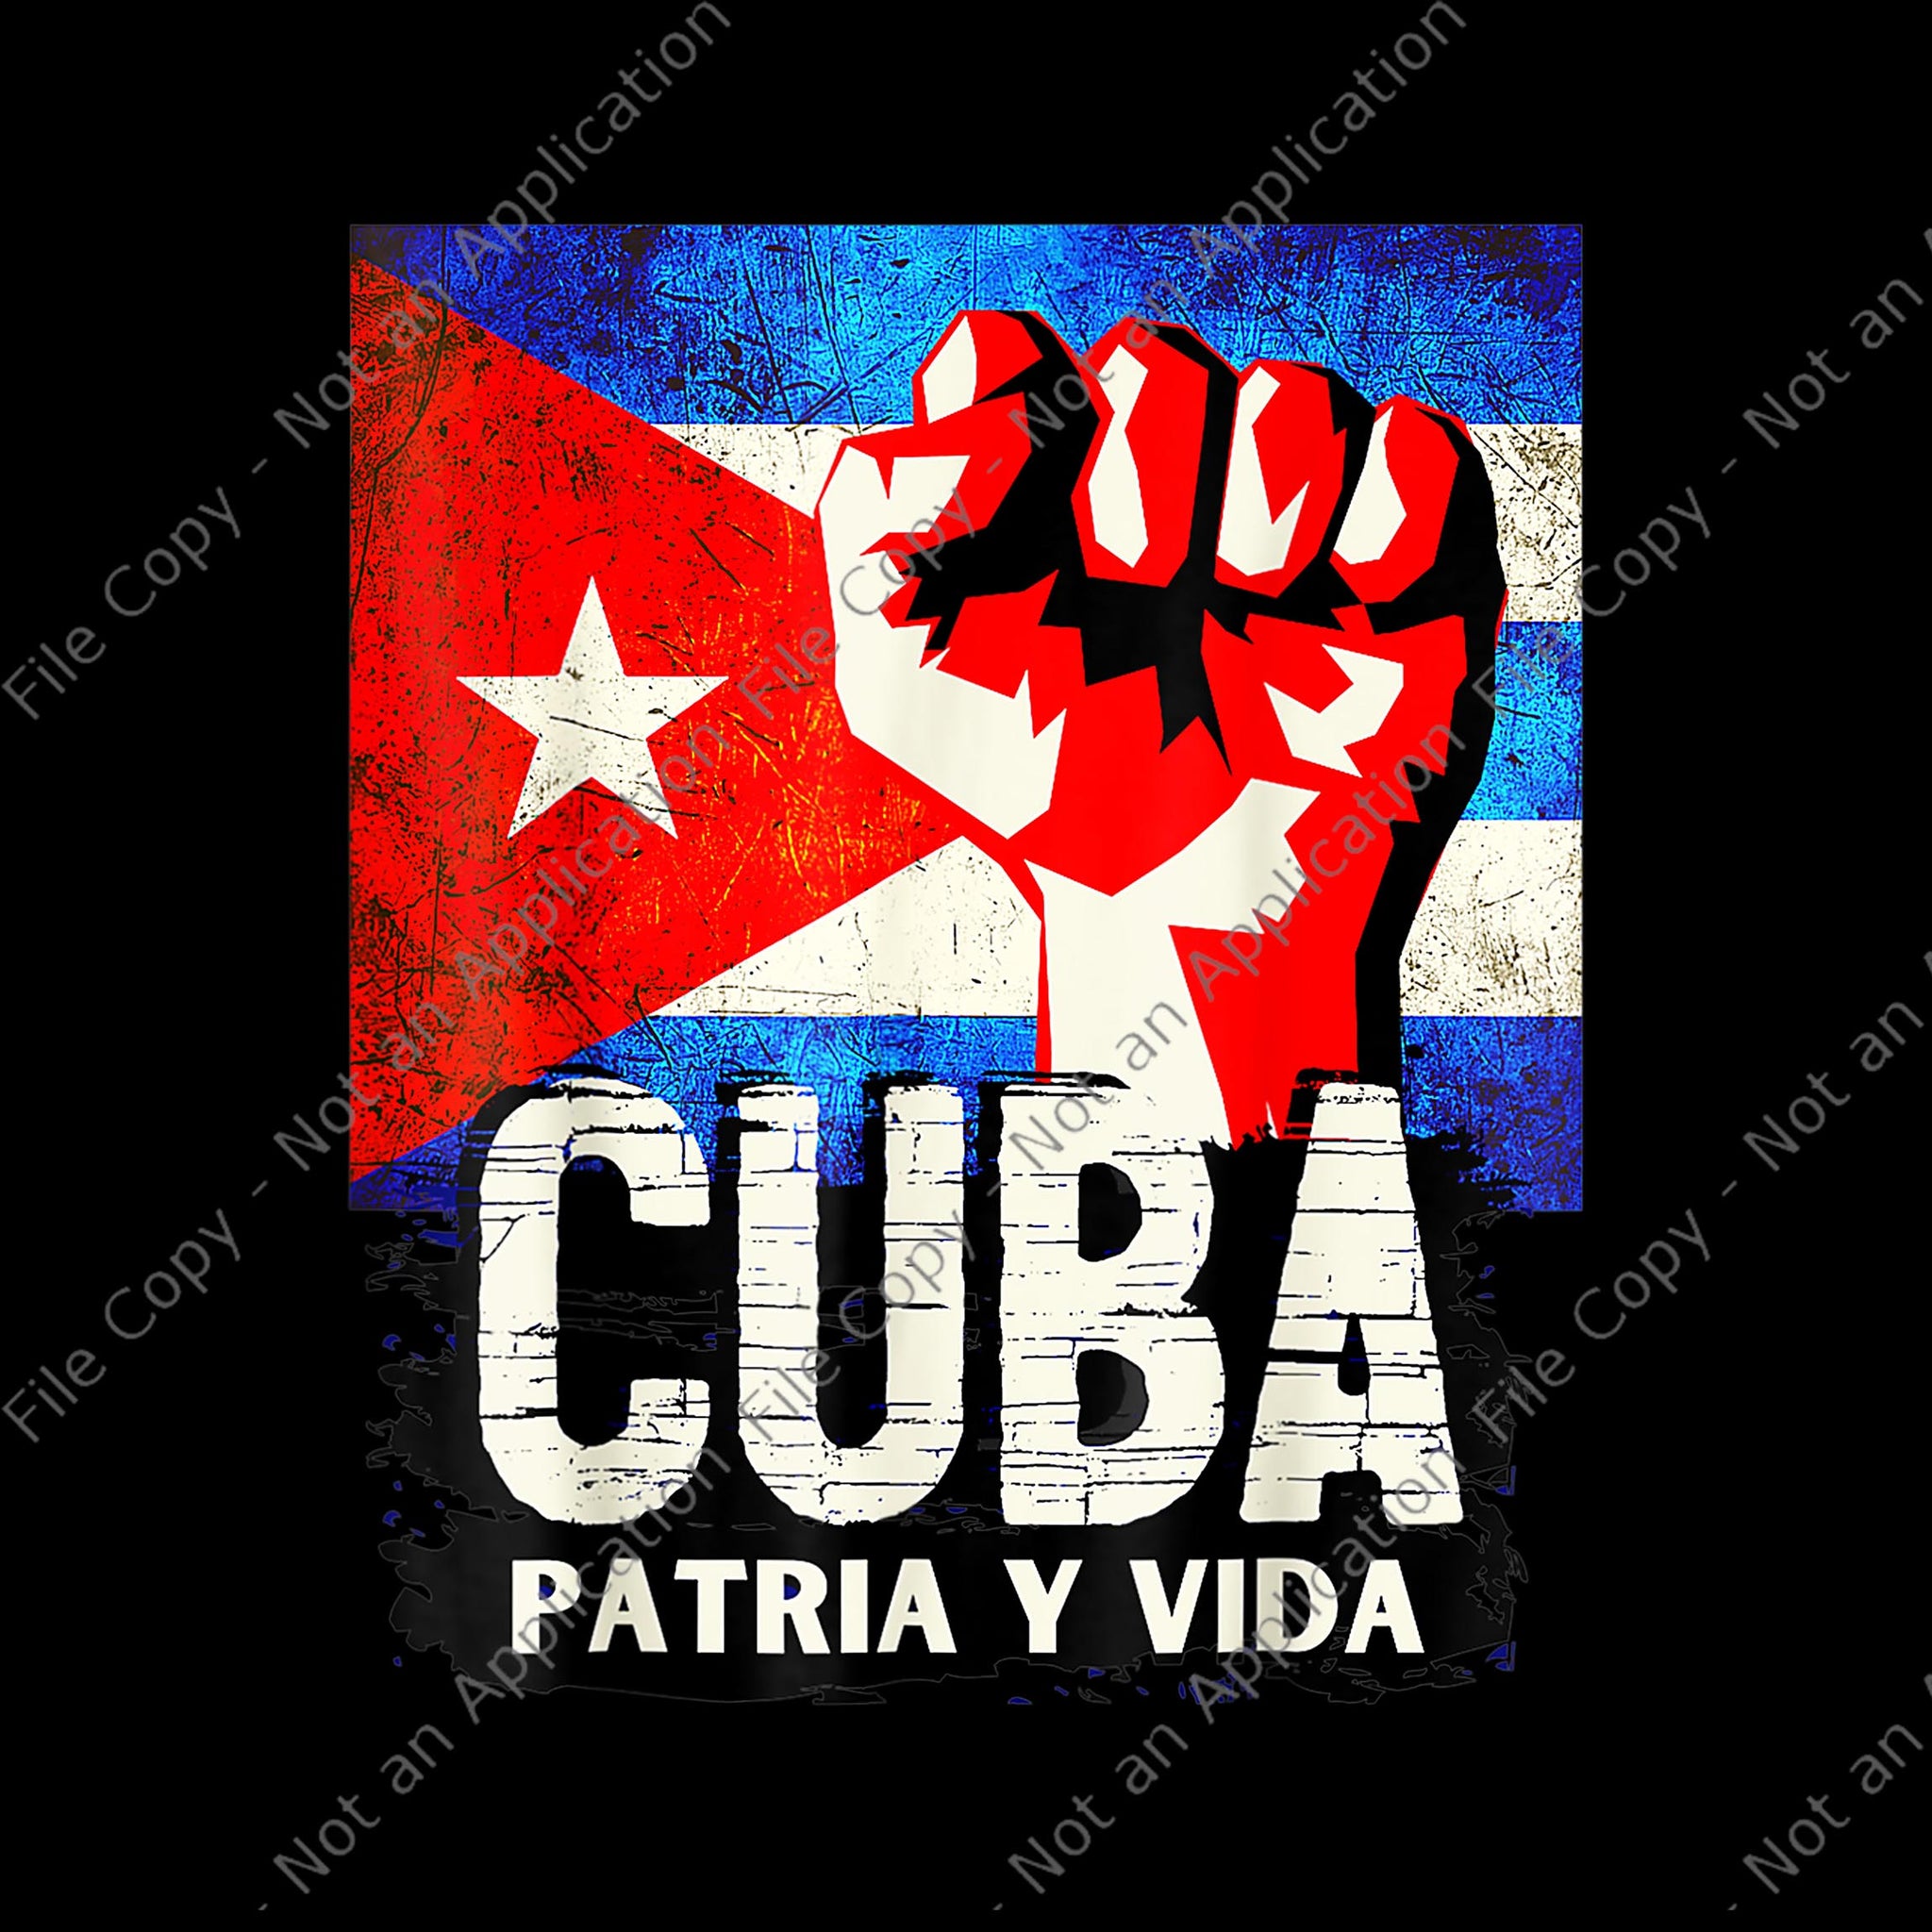 cuba patria y vida png, cuban protest fist flag sos, cuba libre, sos cuba libertad, cuba patria y vida flag, sos cuba, sos cuba png